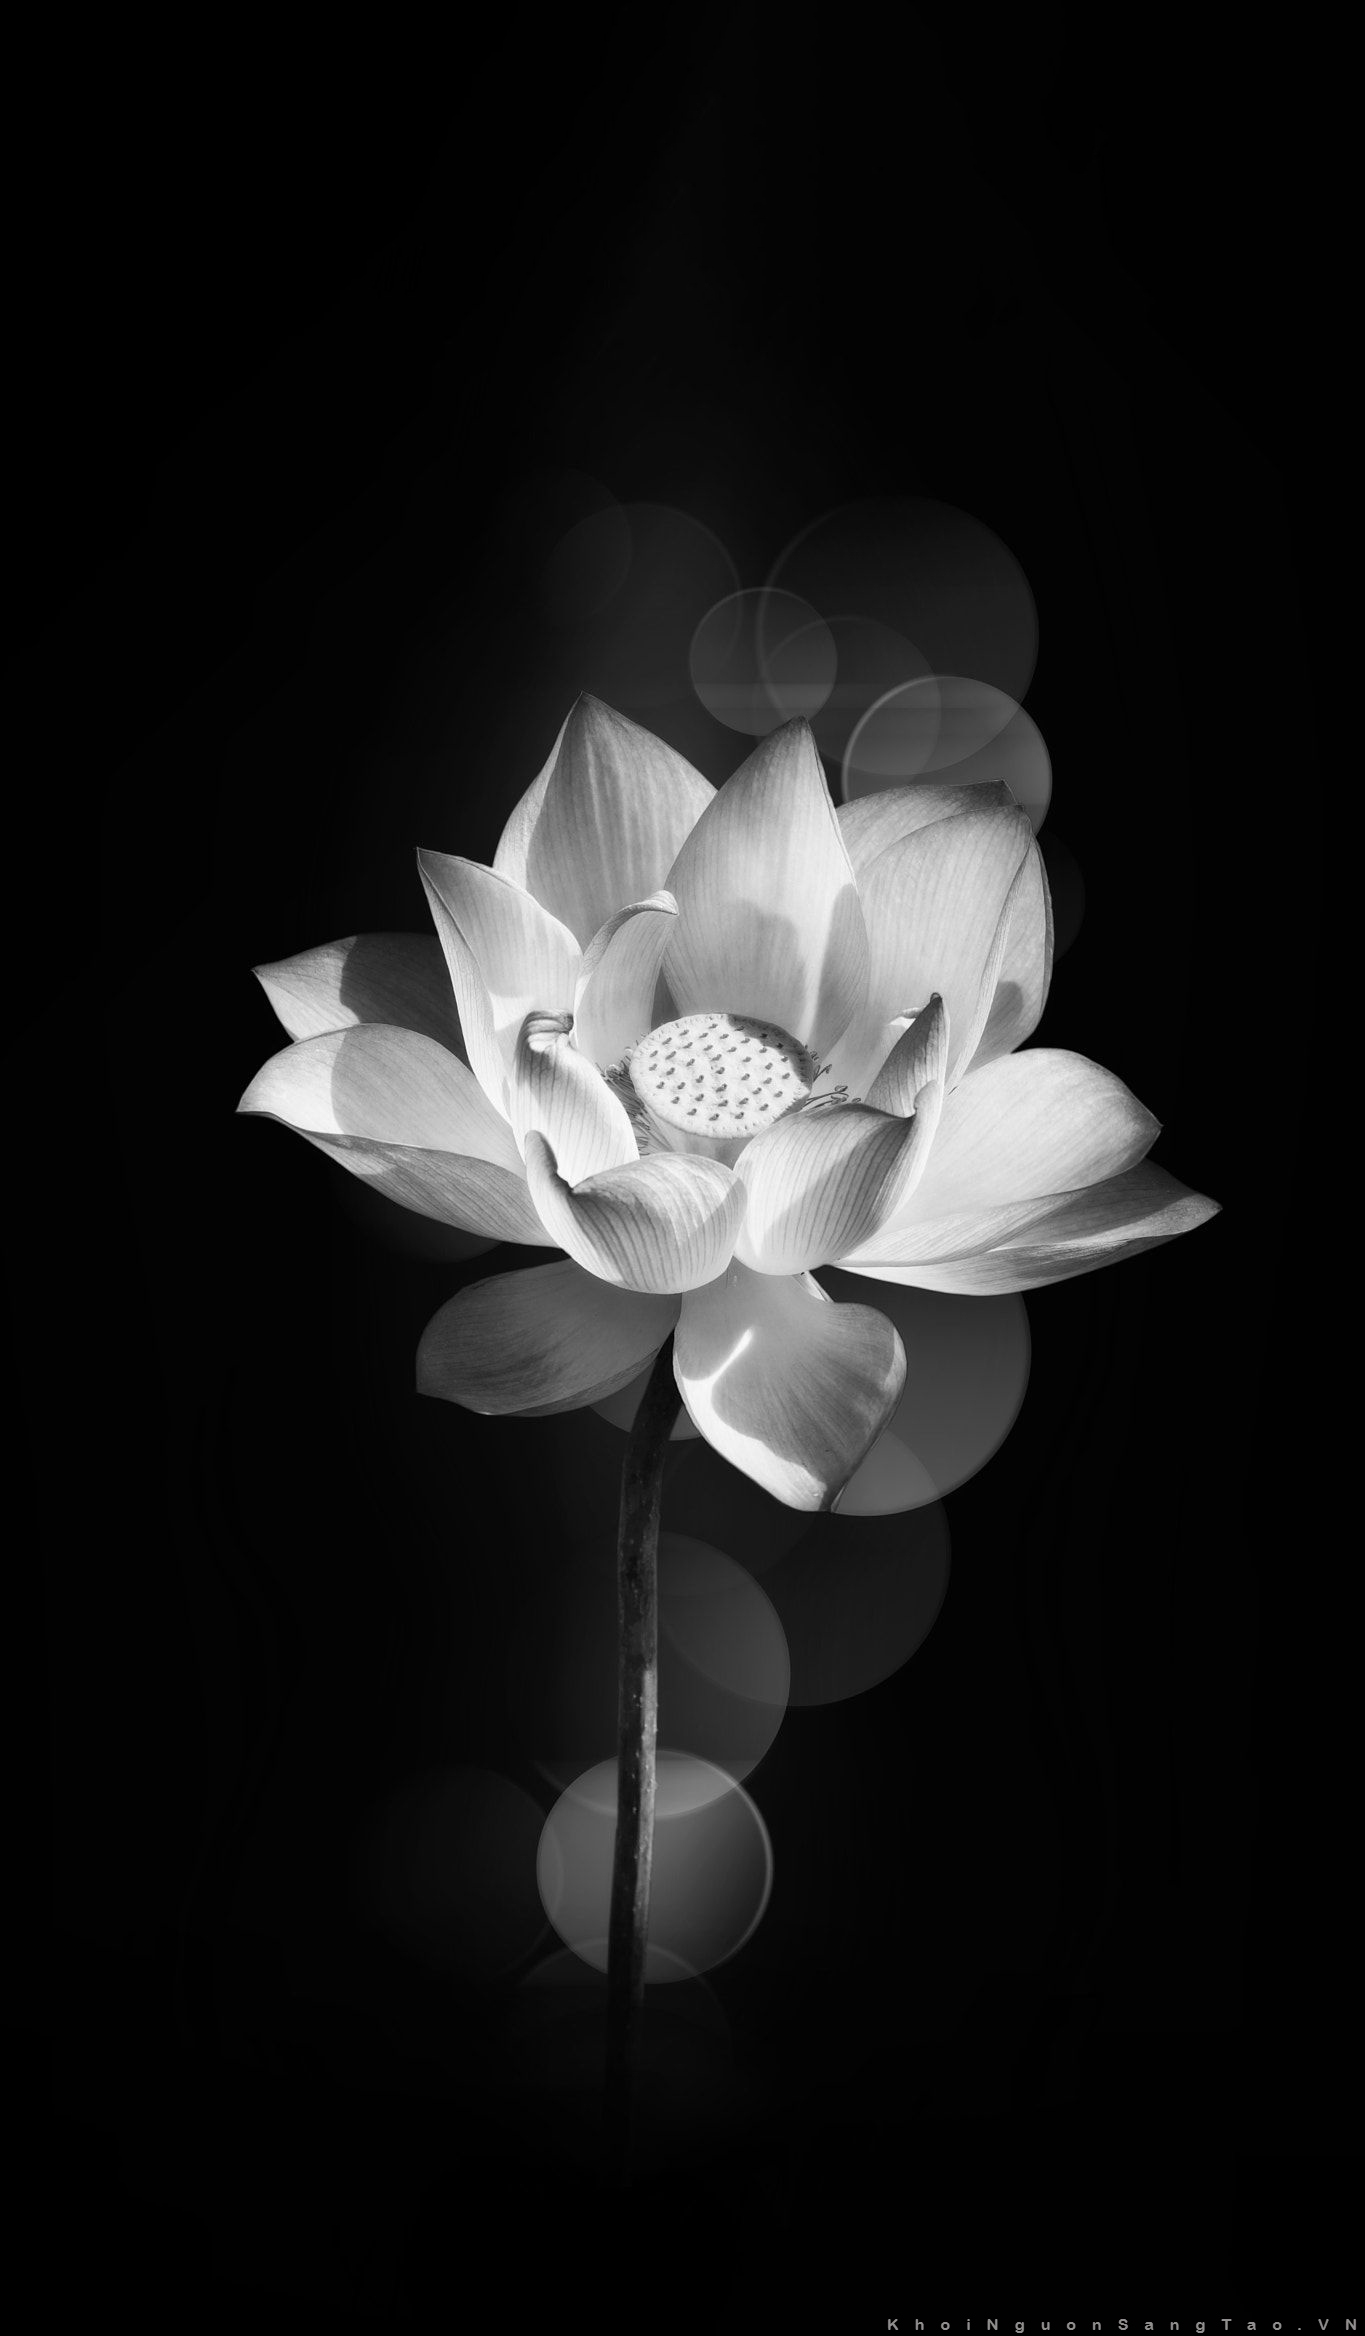 Hình ảnh hoa Sen trắng nền đen đẹp nhất